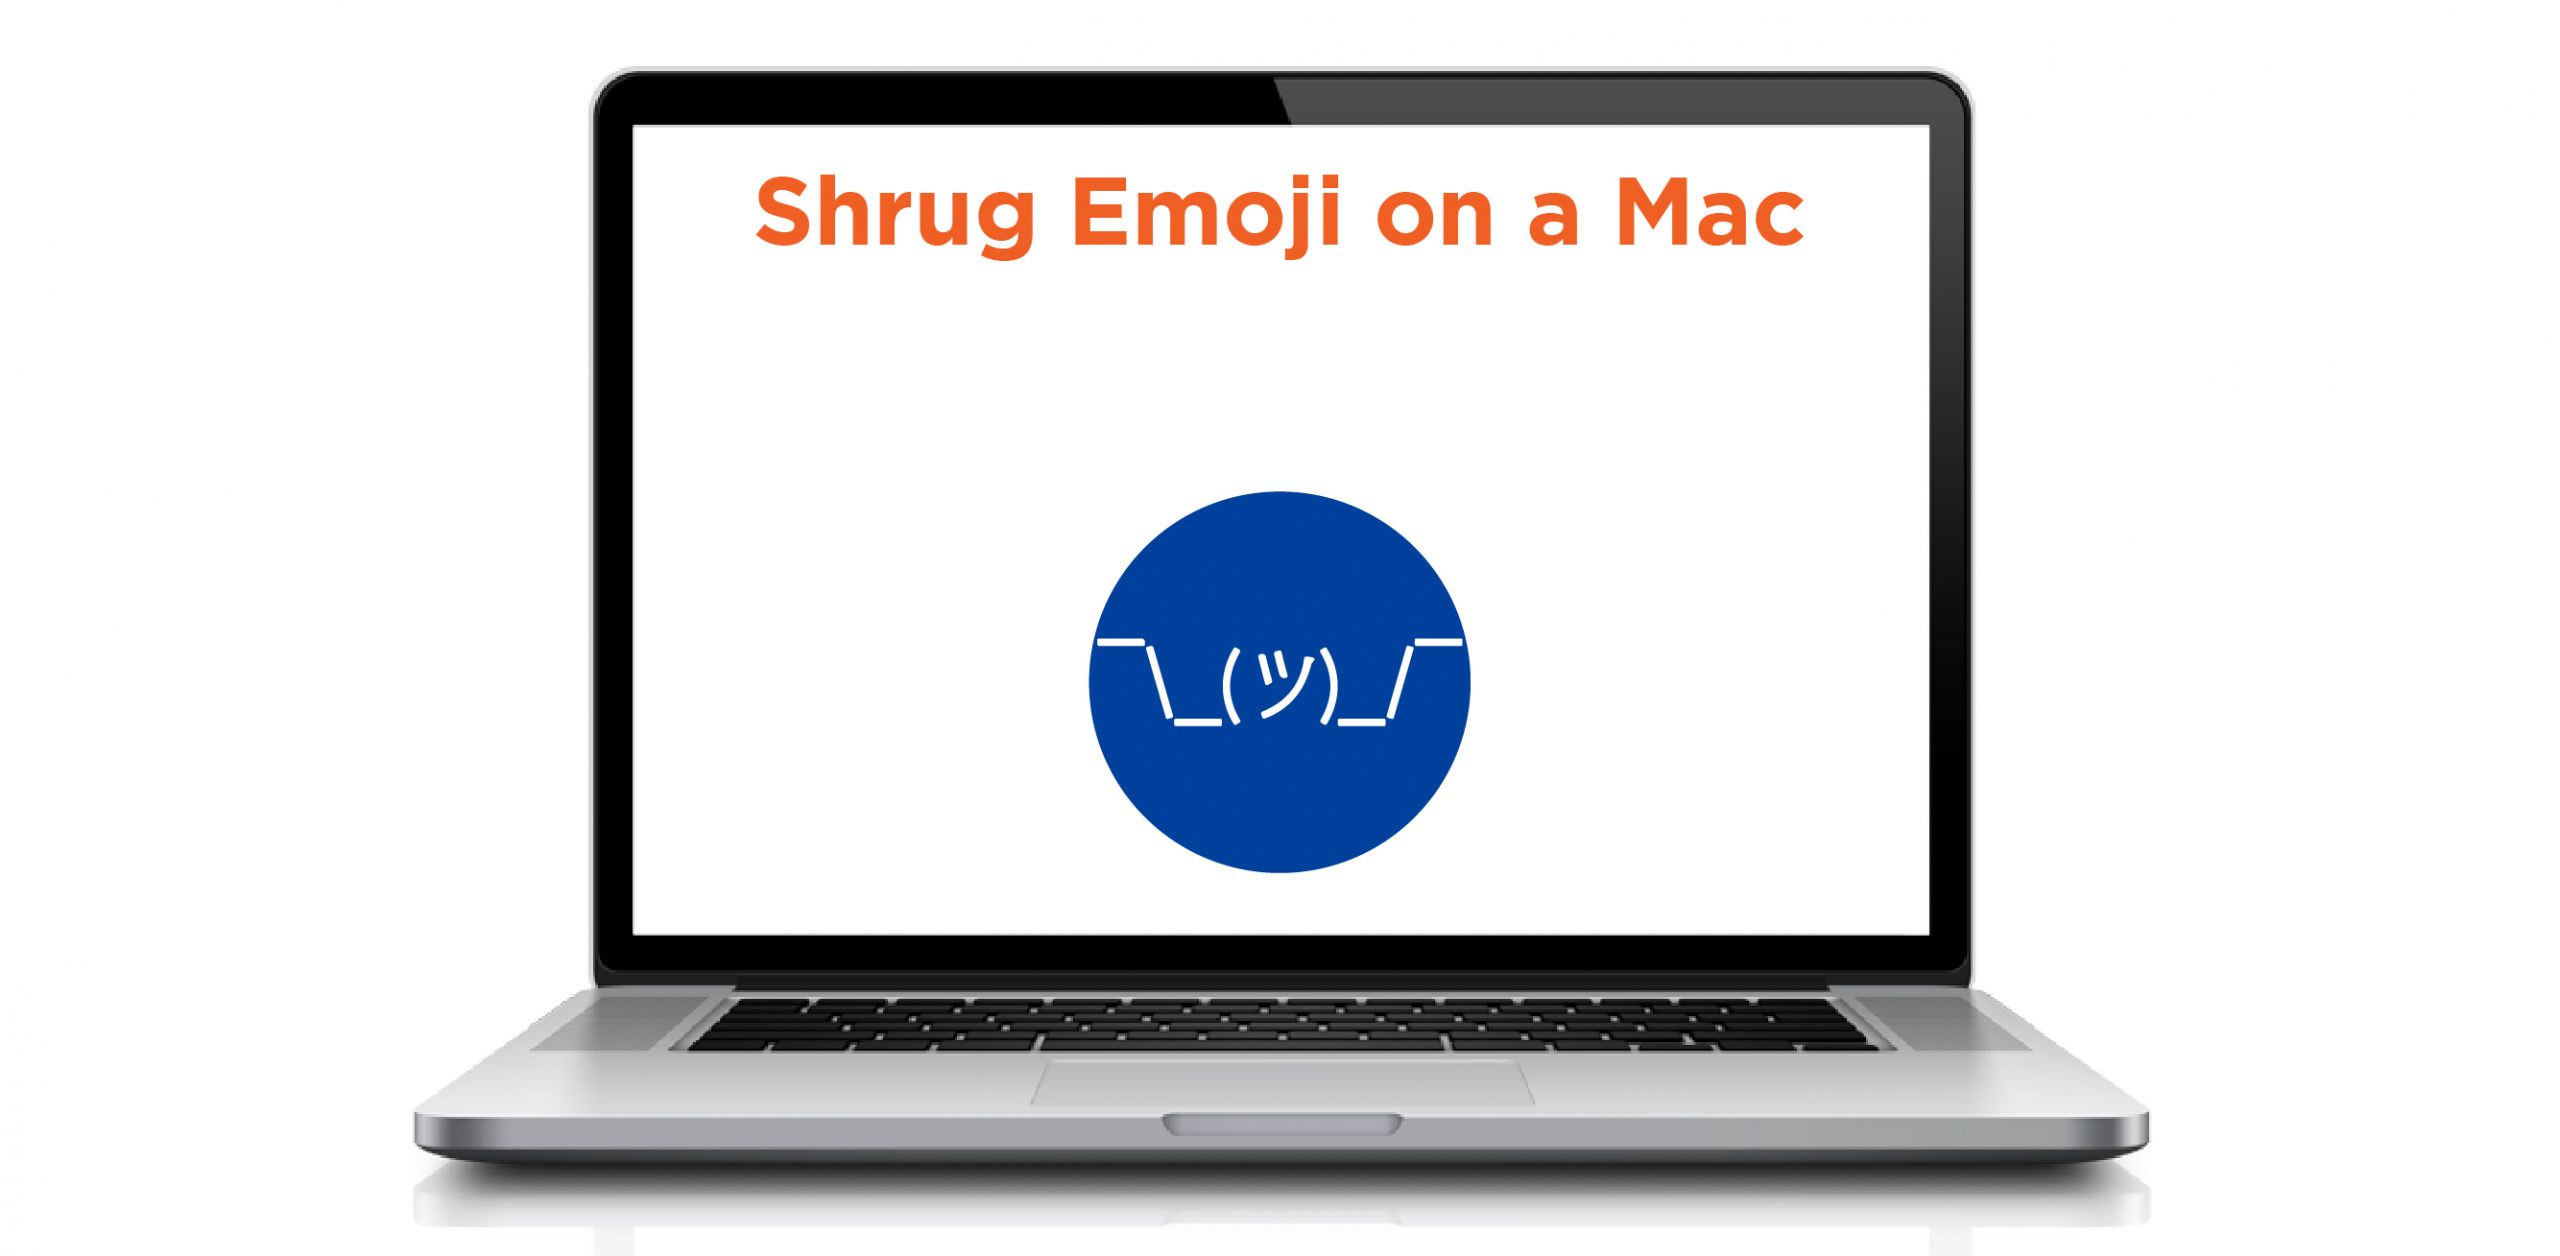 shrug emoji on a Mac